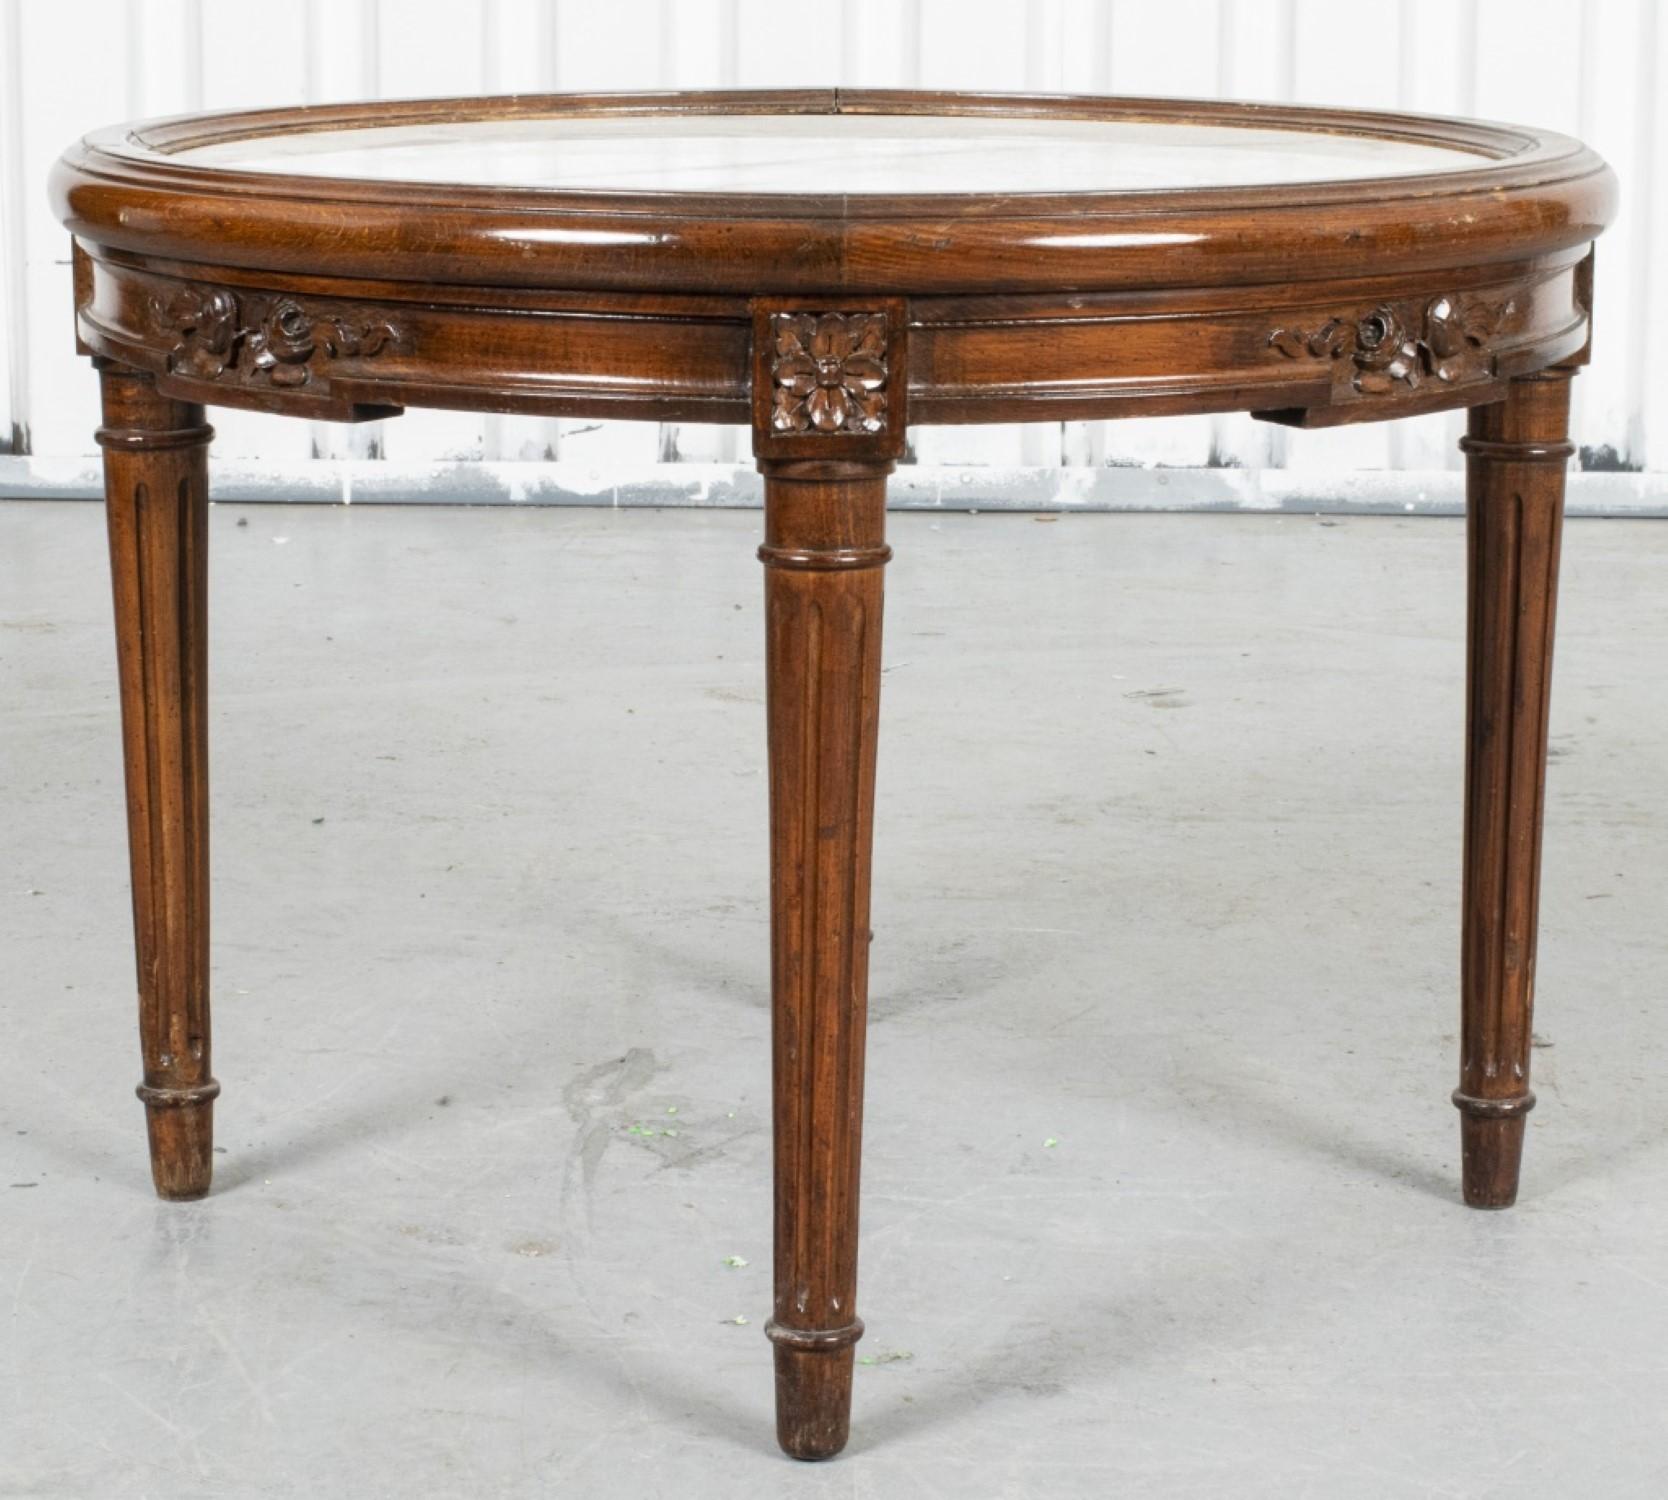 Elegante table d'appoint sculptée de style Louis XVI

Ajoutez une touche de charme raffiné à votre intérieur avec cette magnifique table d'appoint, inspirée du style gracieux de Louis XVI. Dotée d'une base sculptée de manière complexe et d'un